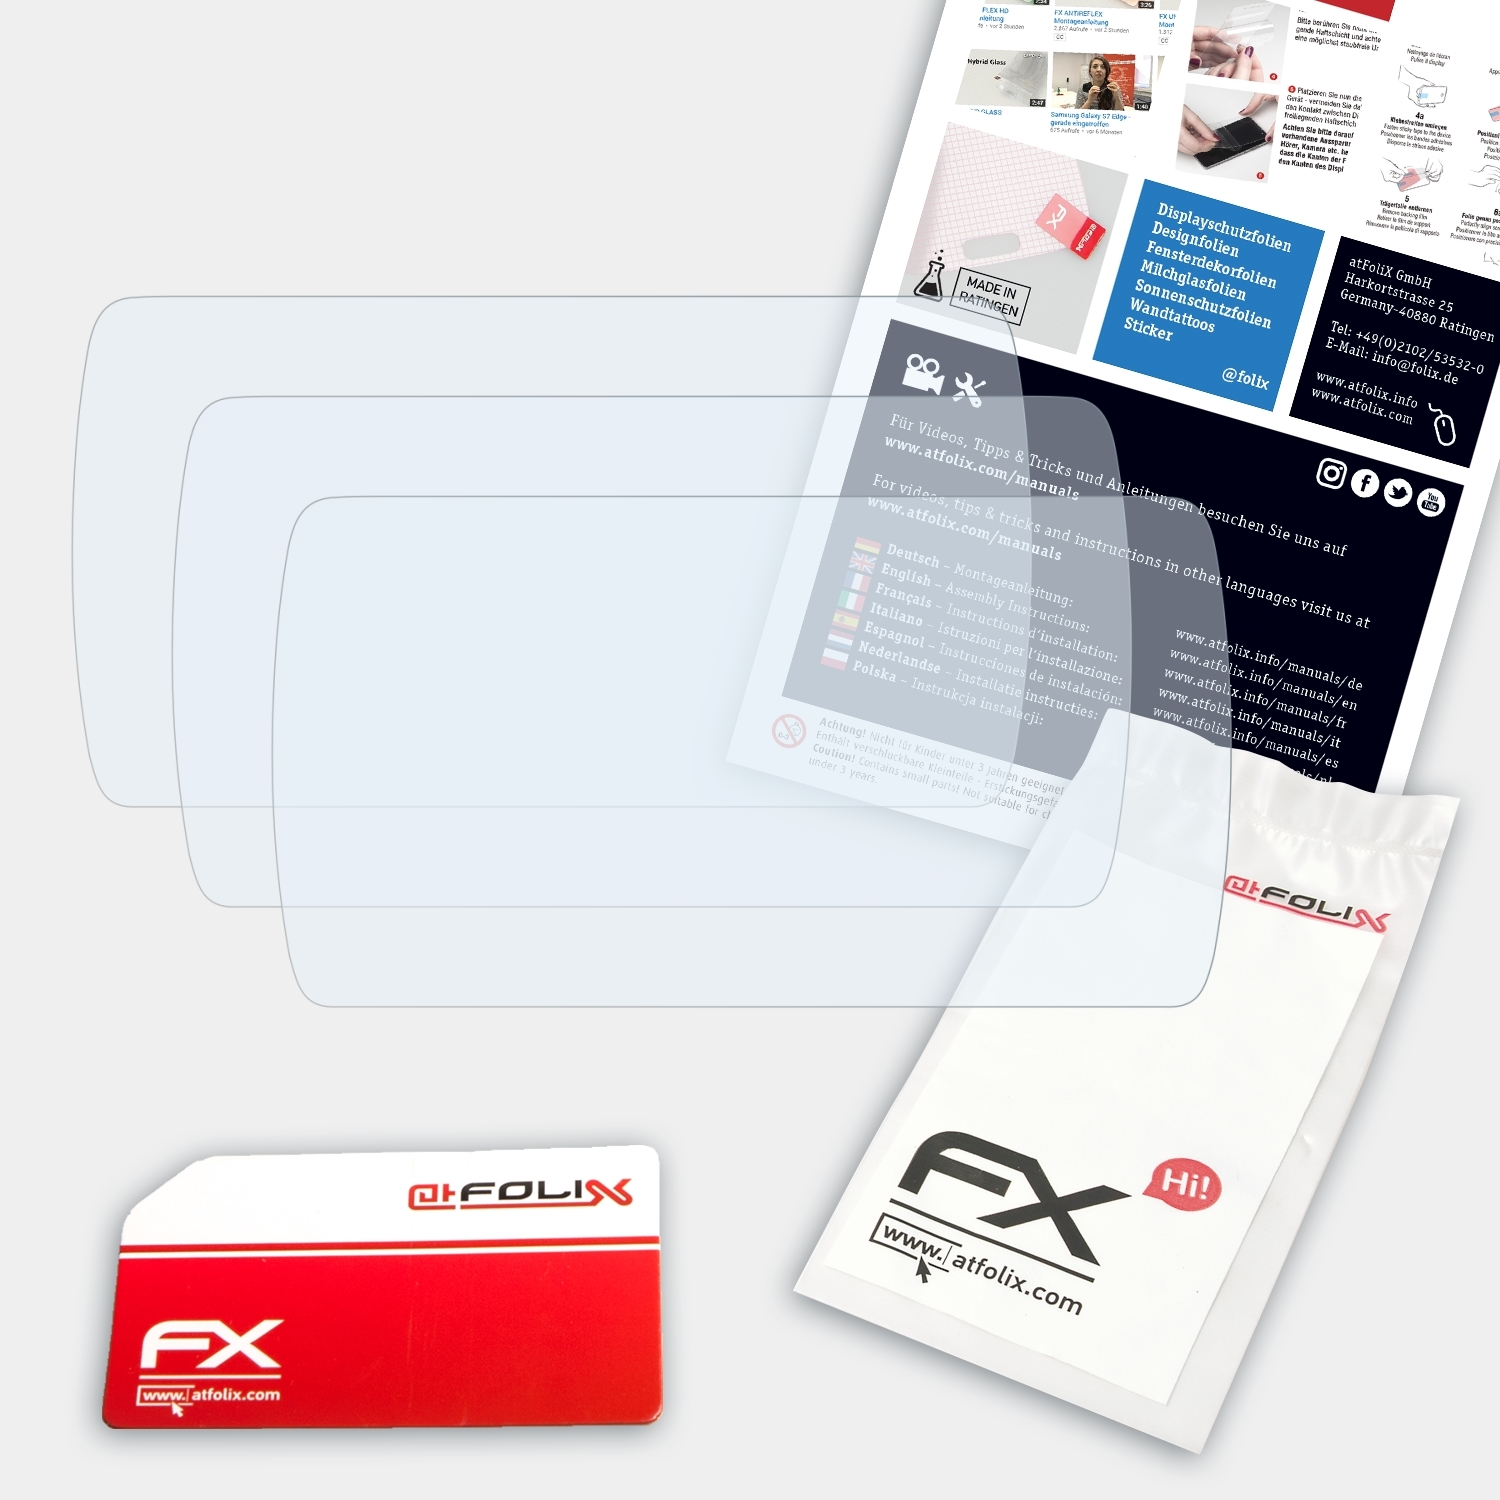 ATFOLIX 3x FX-Clear Displayschutz(für 212 Lite) Nextbase